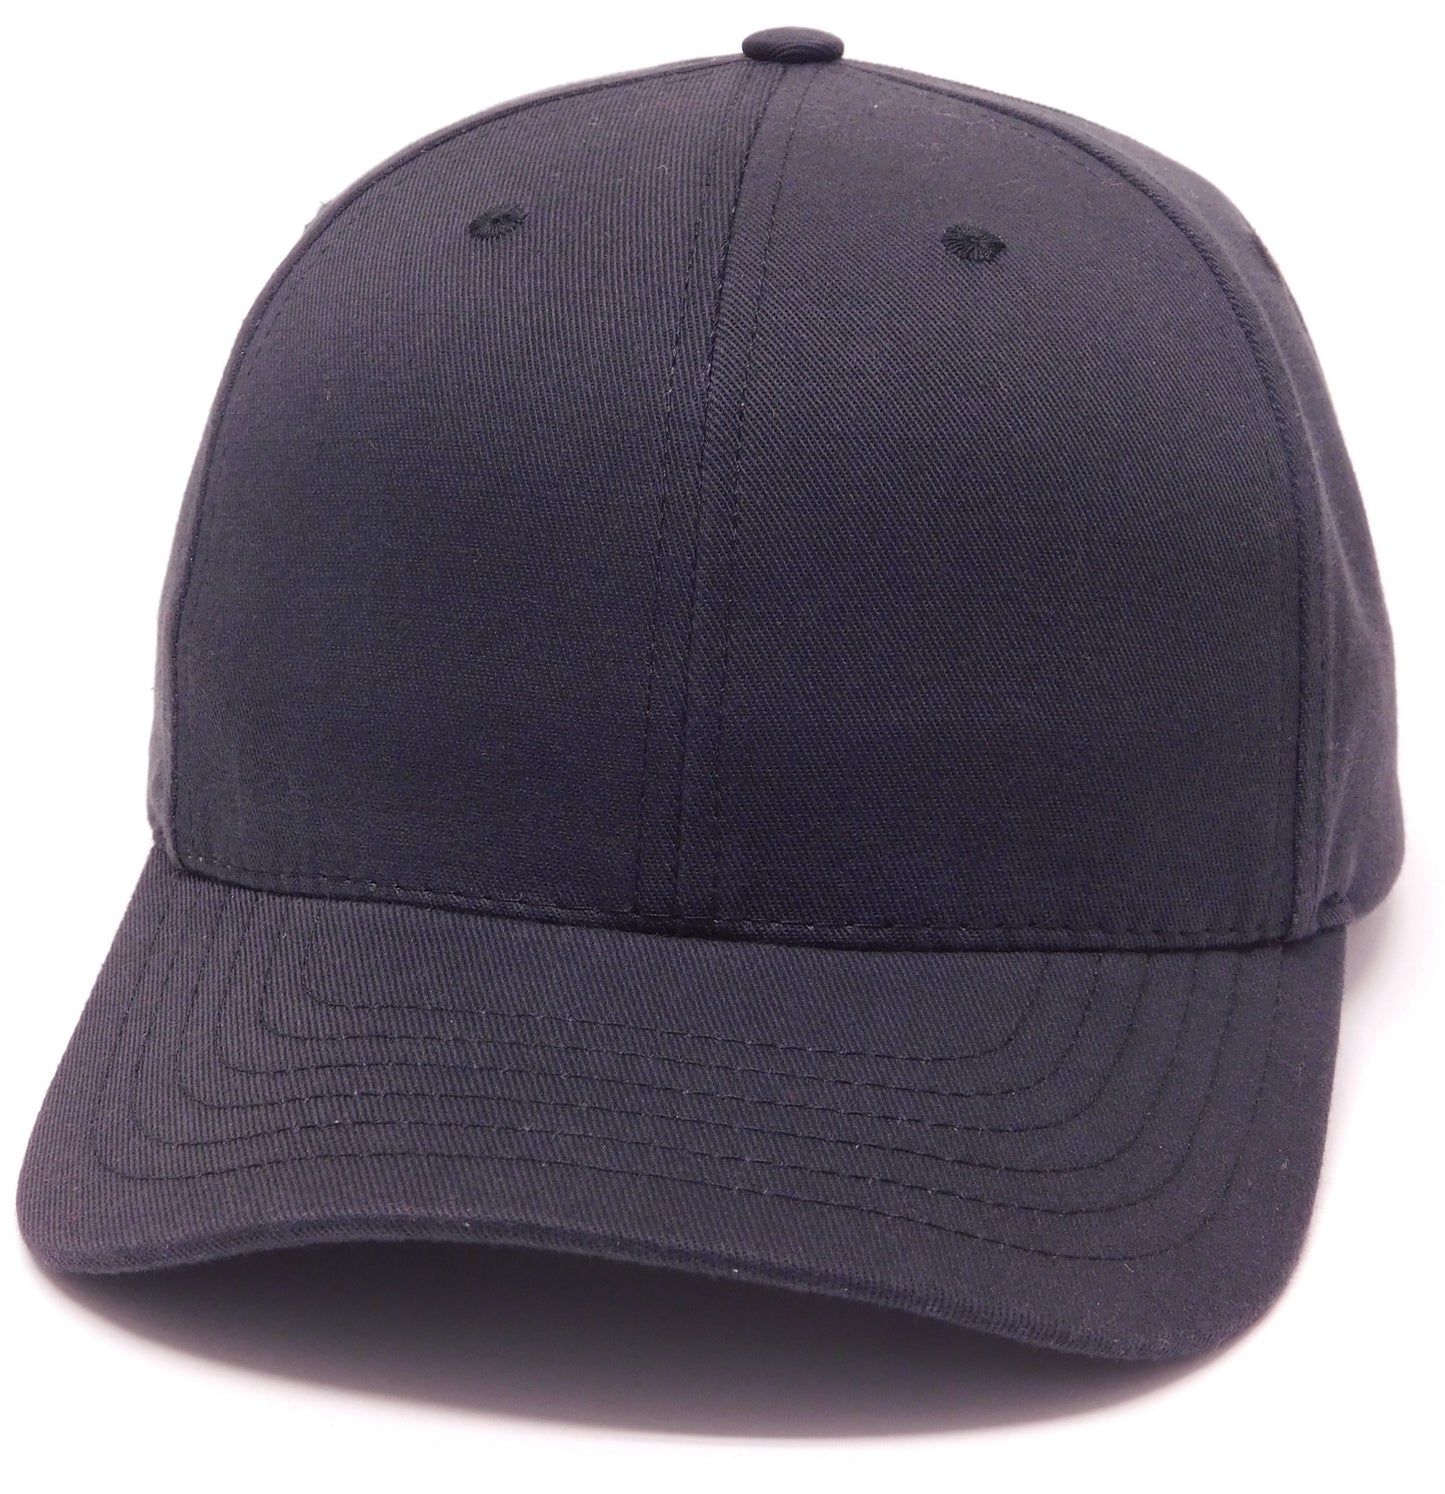 USA 600- Standard Twill Cap